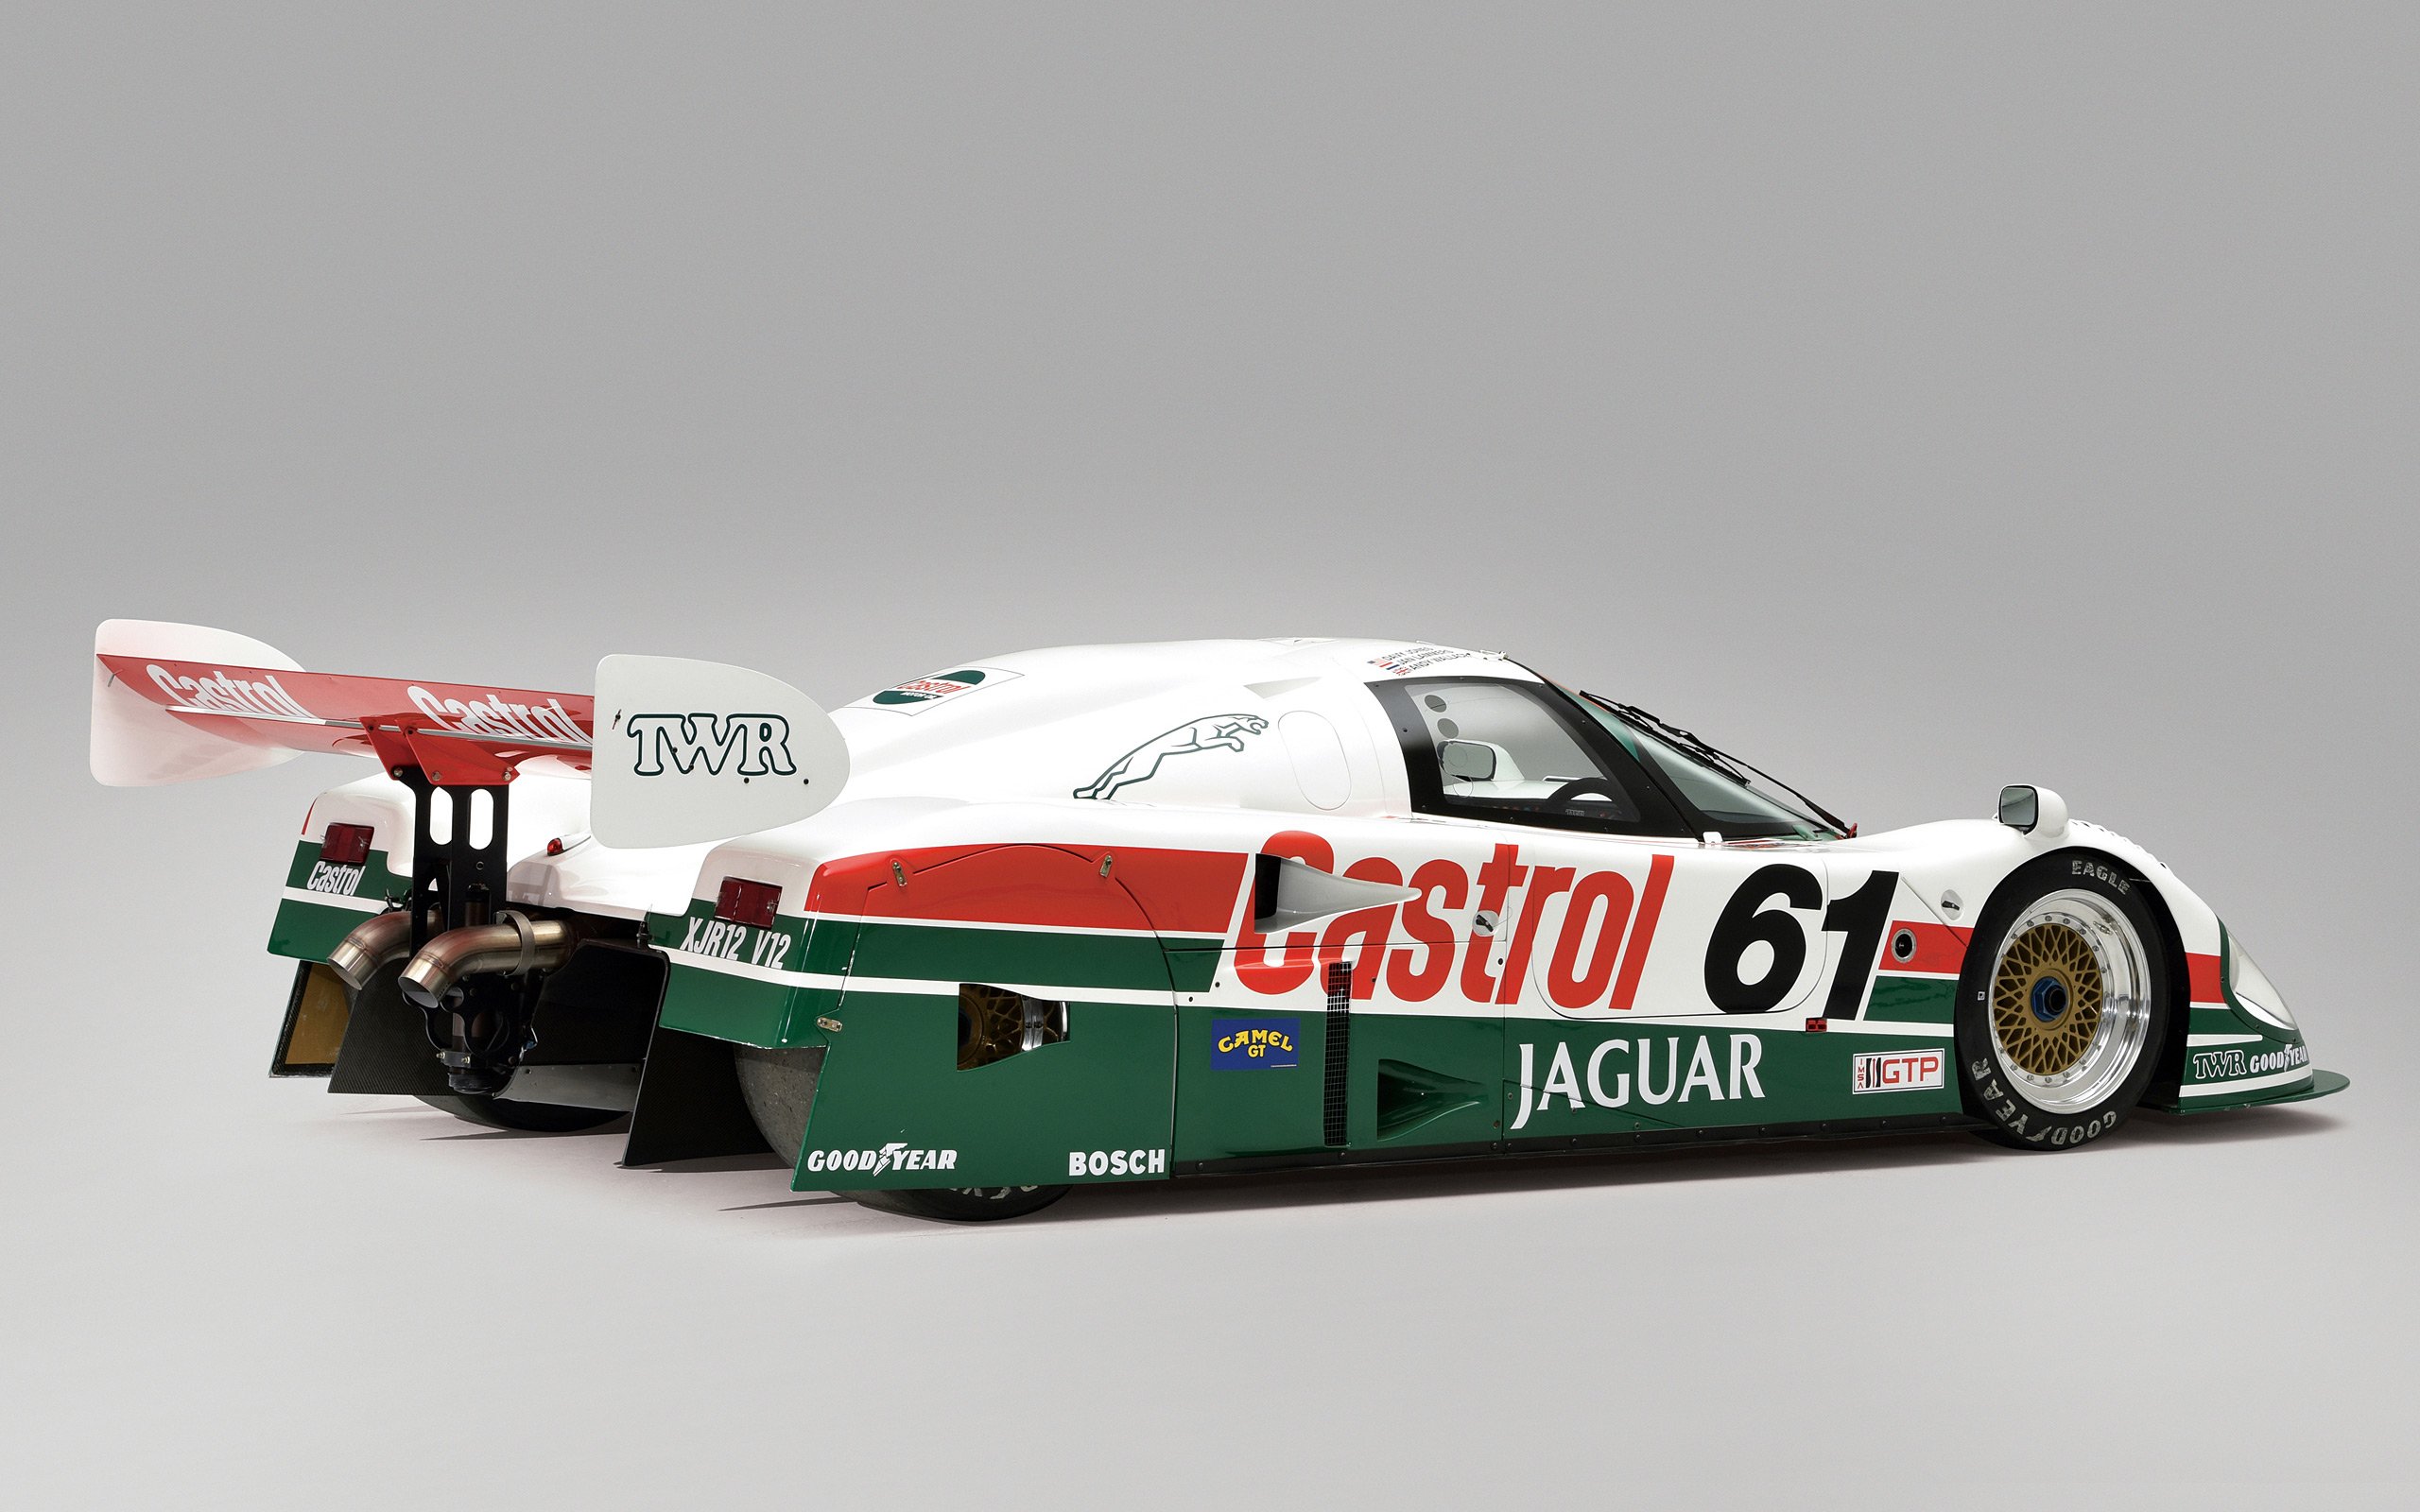 1988, Jaguar, Xjr 9, Castrol, Le mans, Race, Racing, Lemans Wallpaper